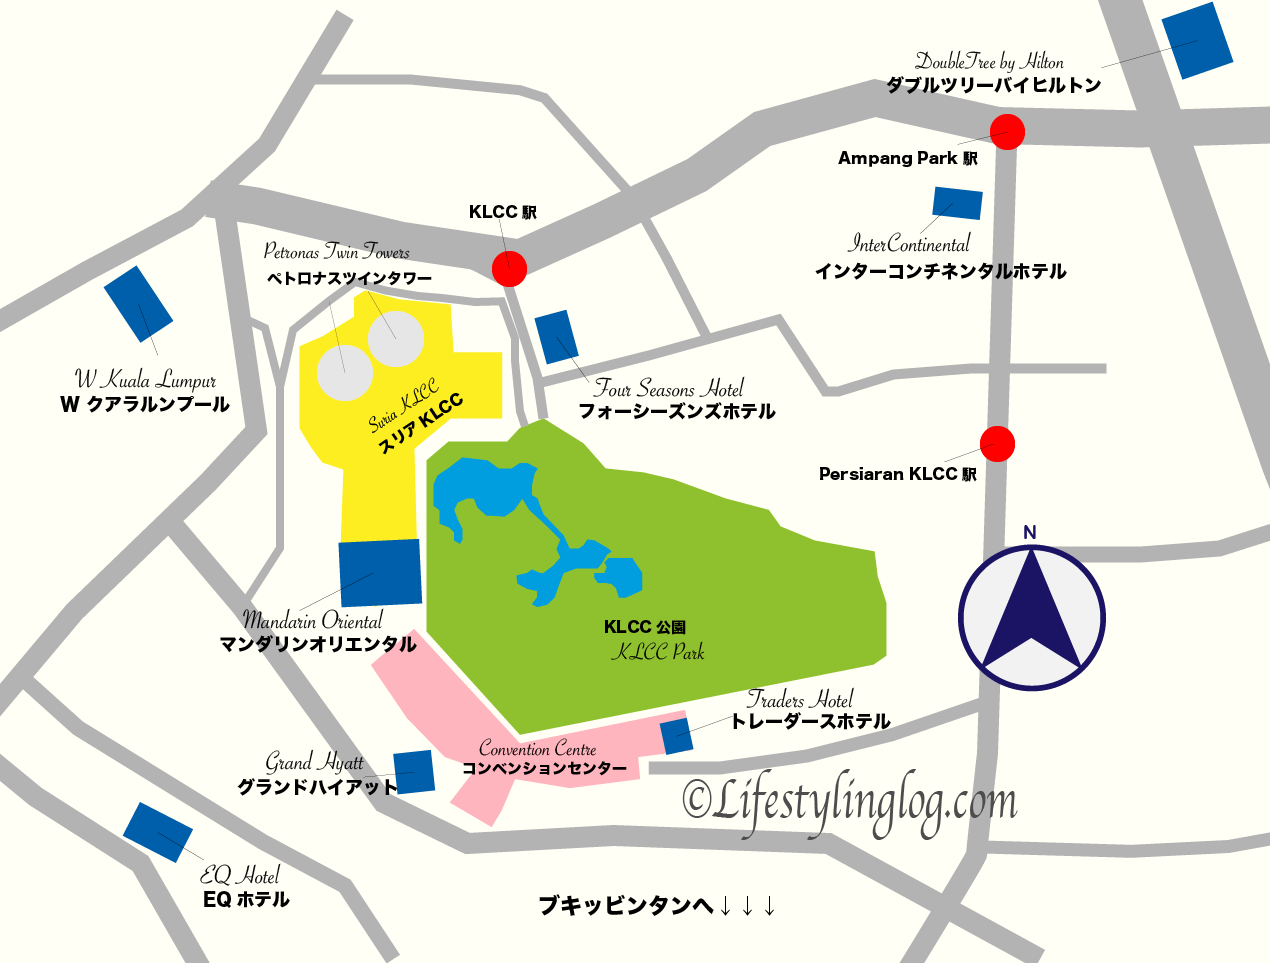 KLCCエリアにある名所とホテルの位置を示す地図（イメージマップ）